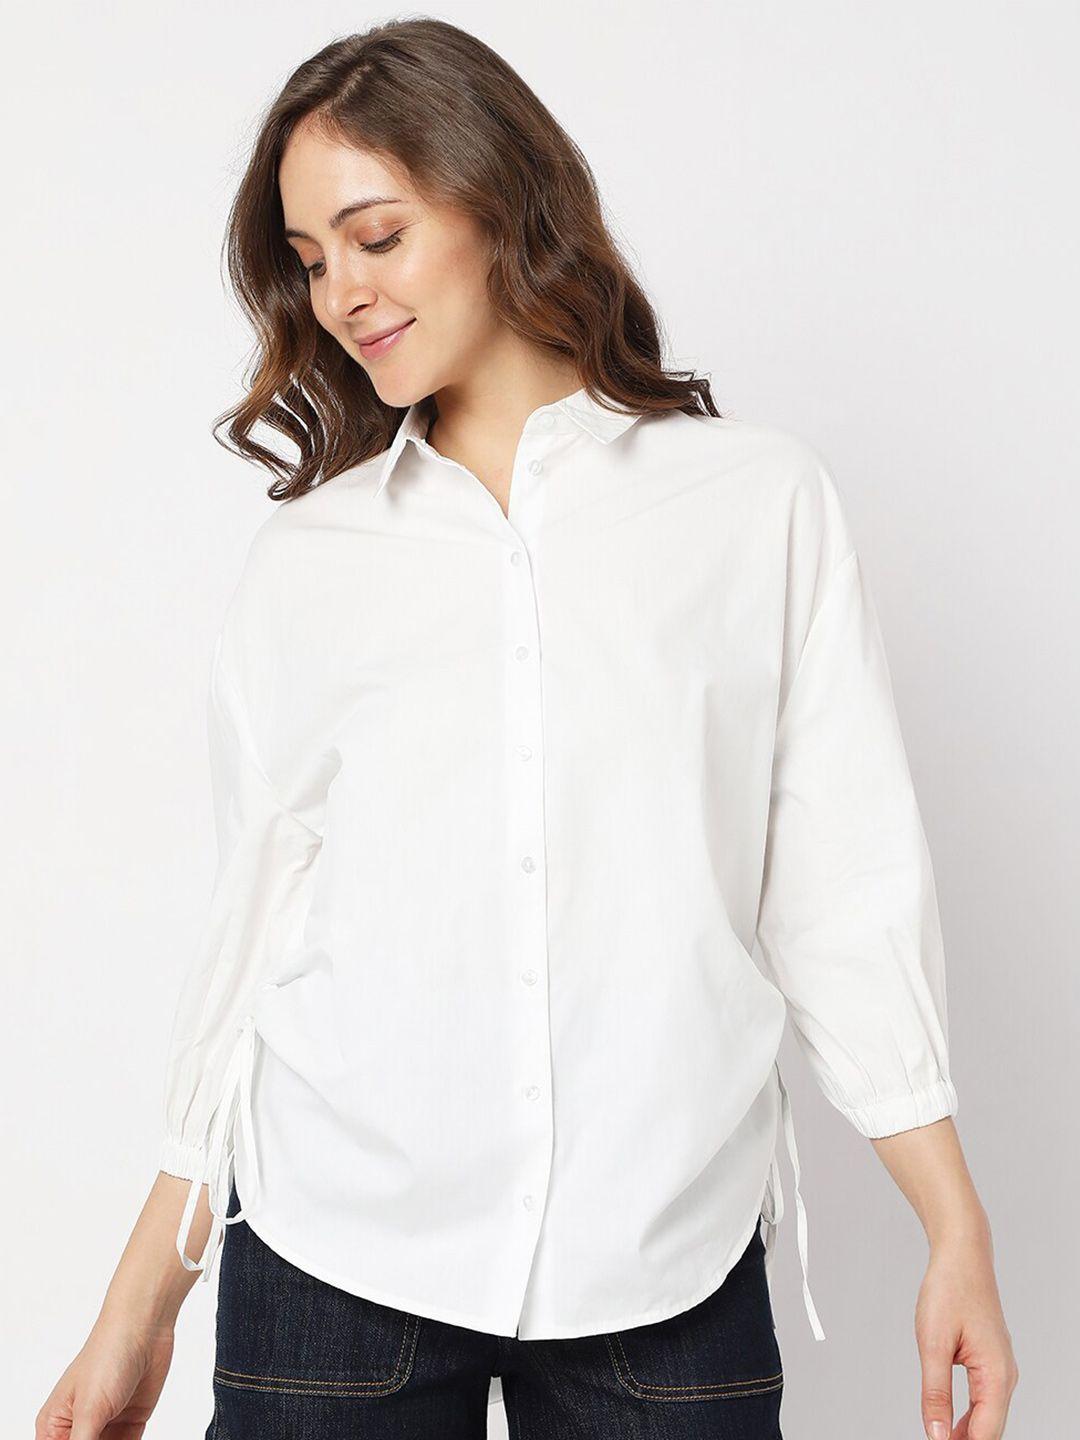 Vero Moda Women Casual Spread Collar Cotton Shirt